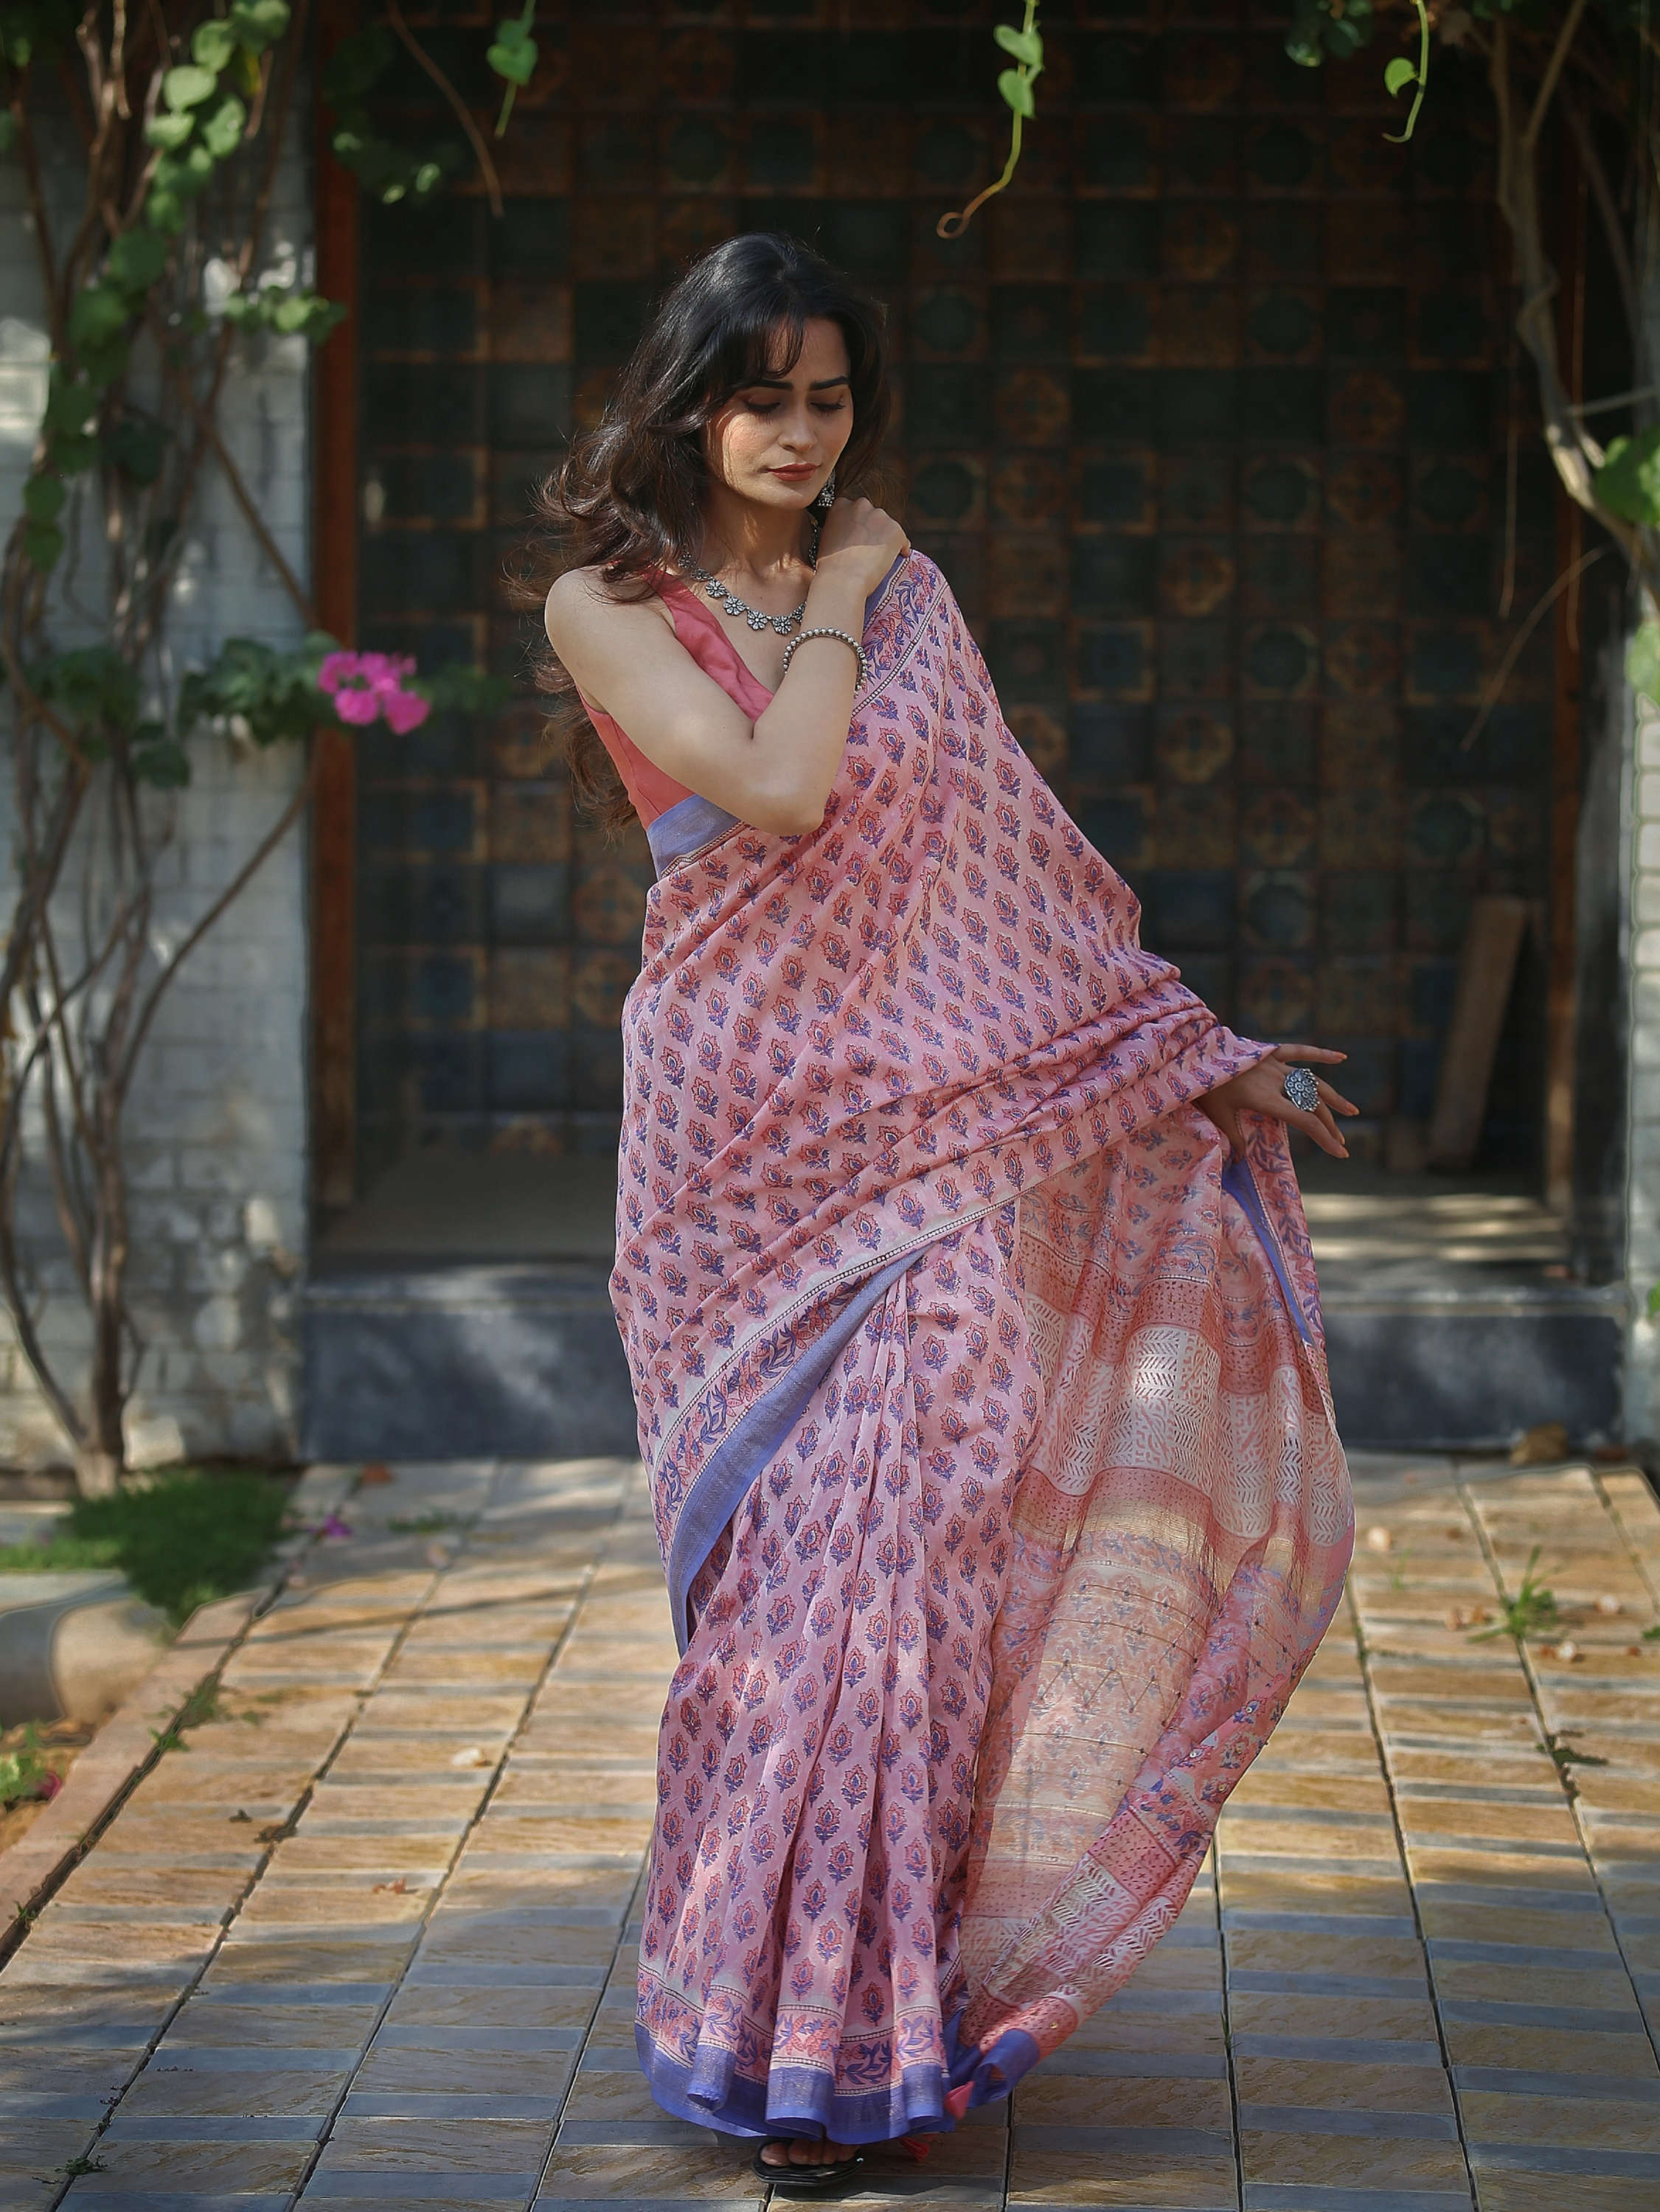 chanderi saree maheshwari saree blockprint saree beautiful saree pink saree